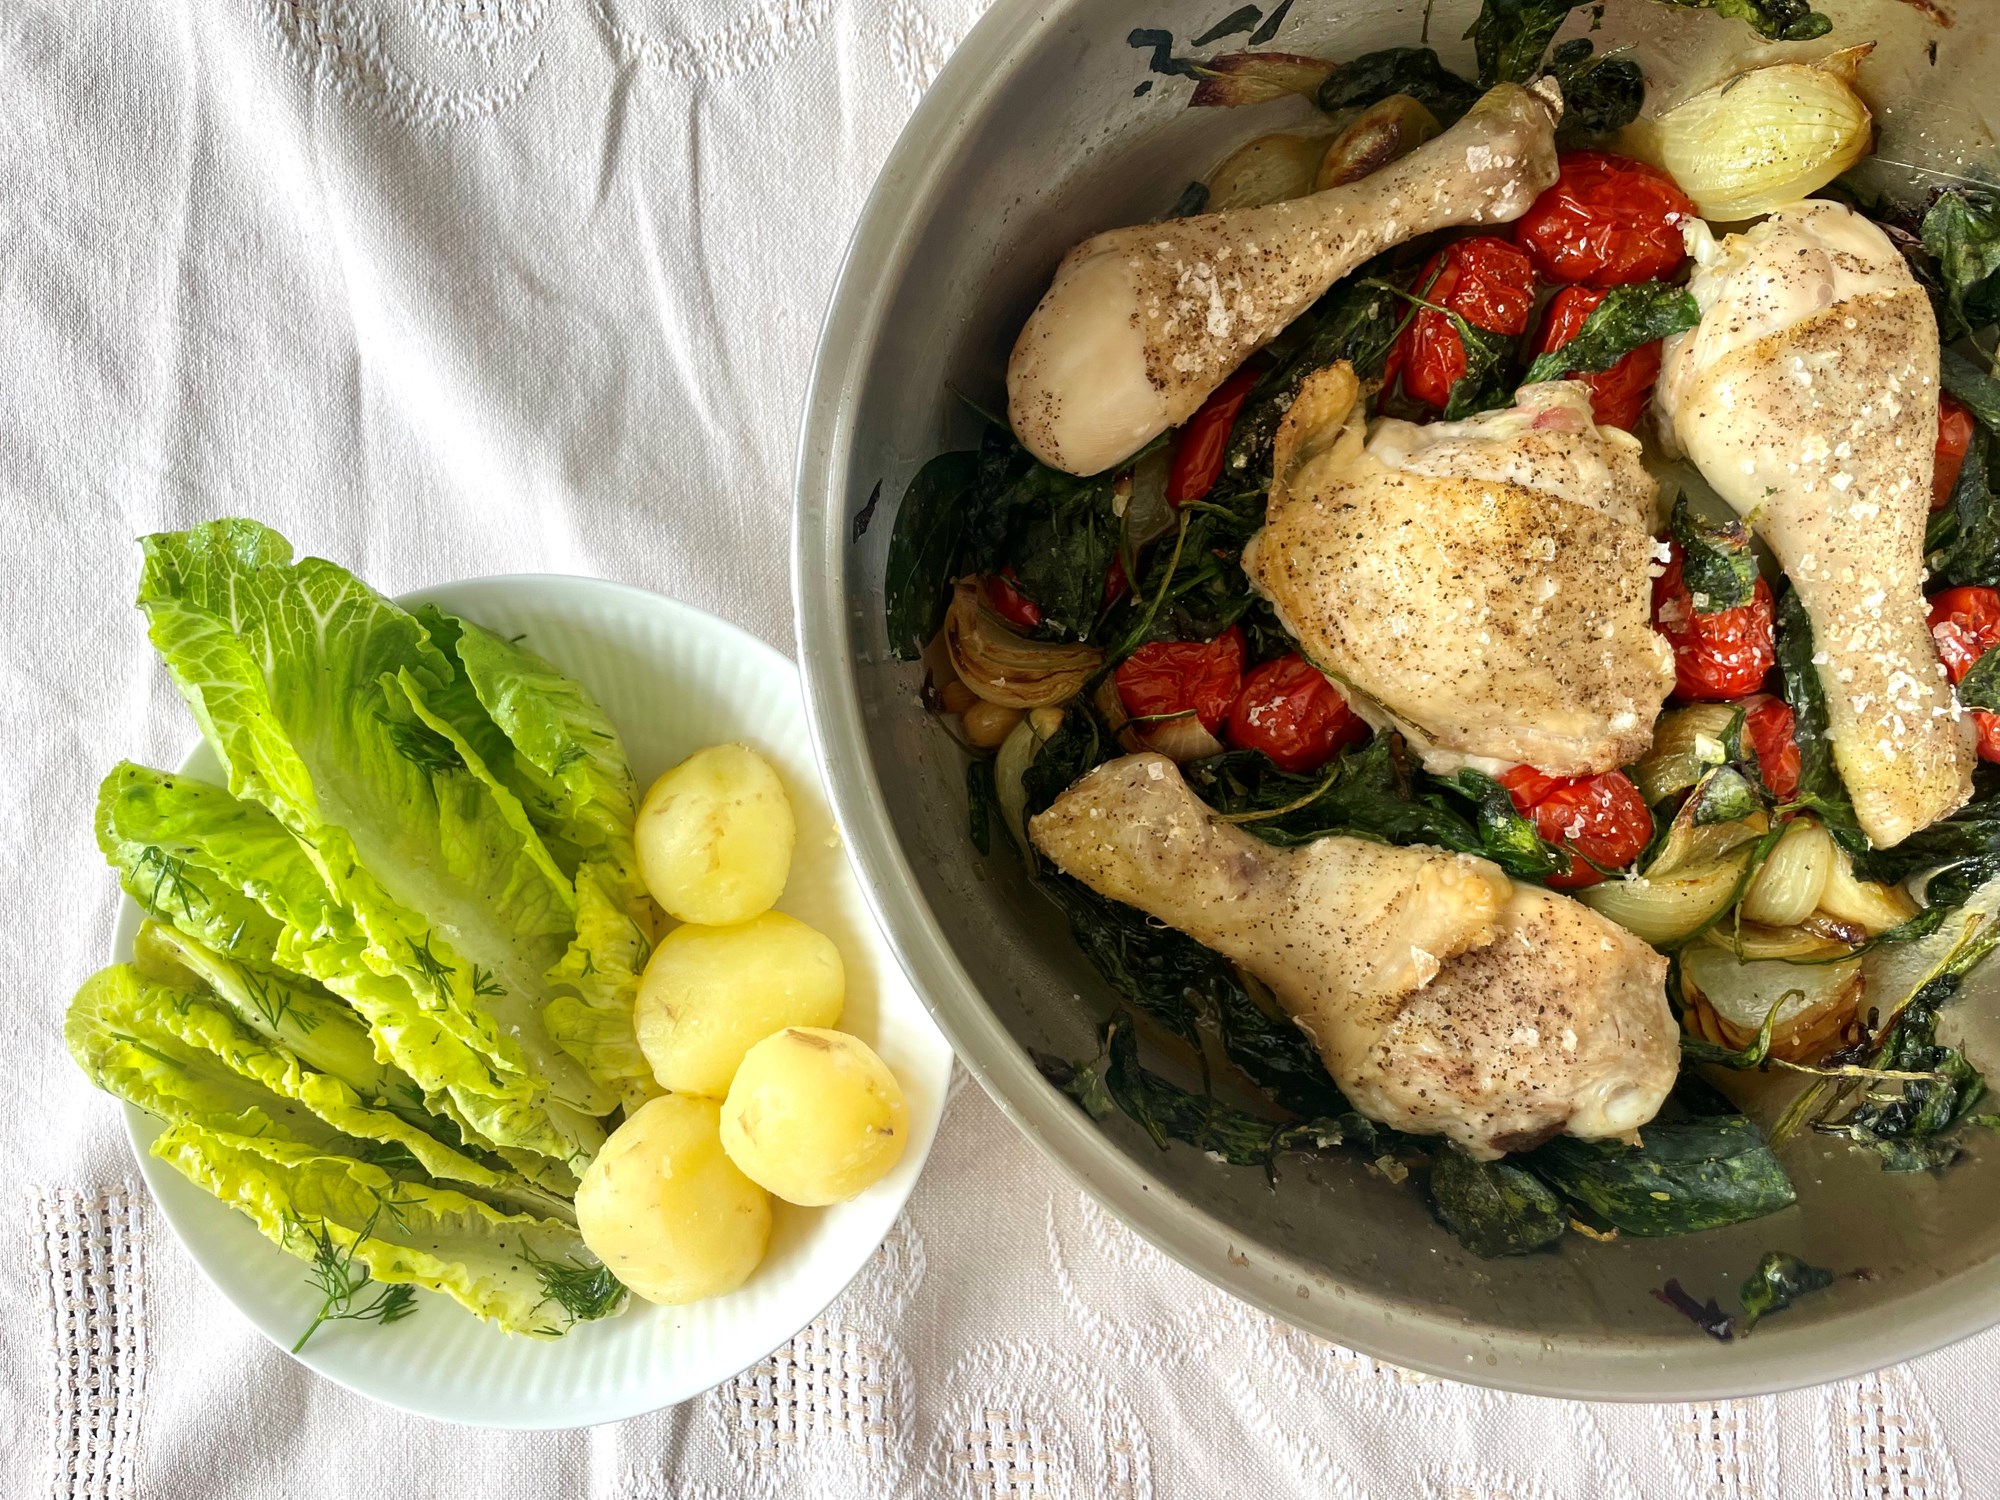 Bagte kyllingelår med tomater, spinat og en frisk dildsalat